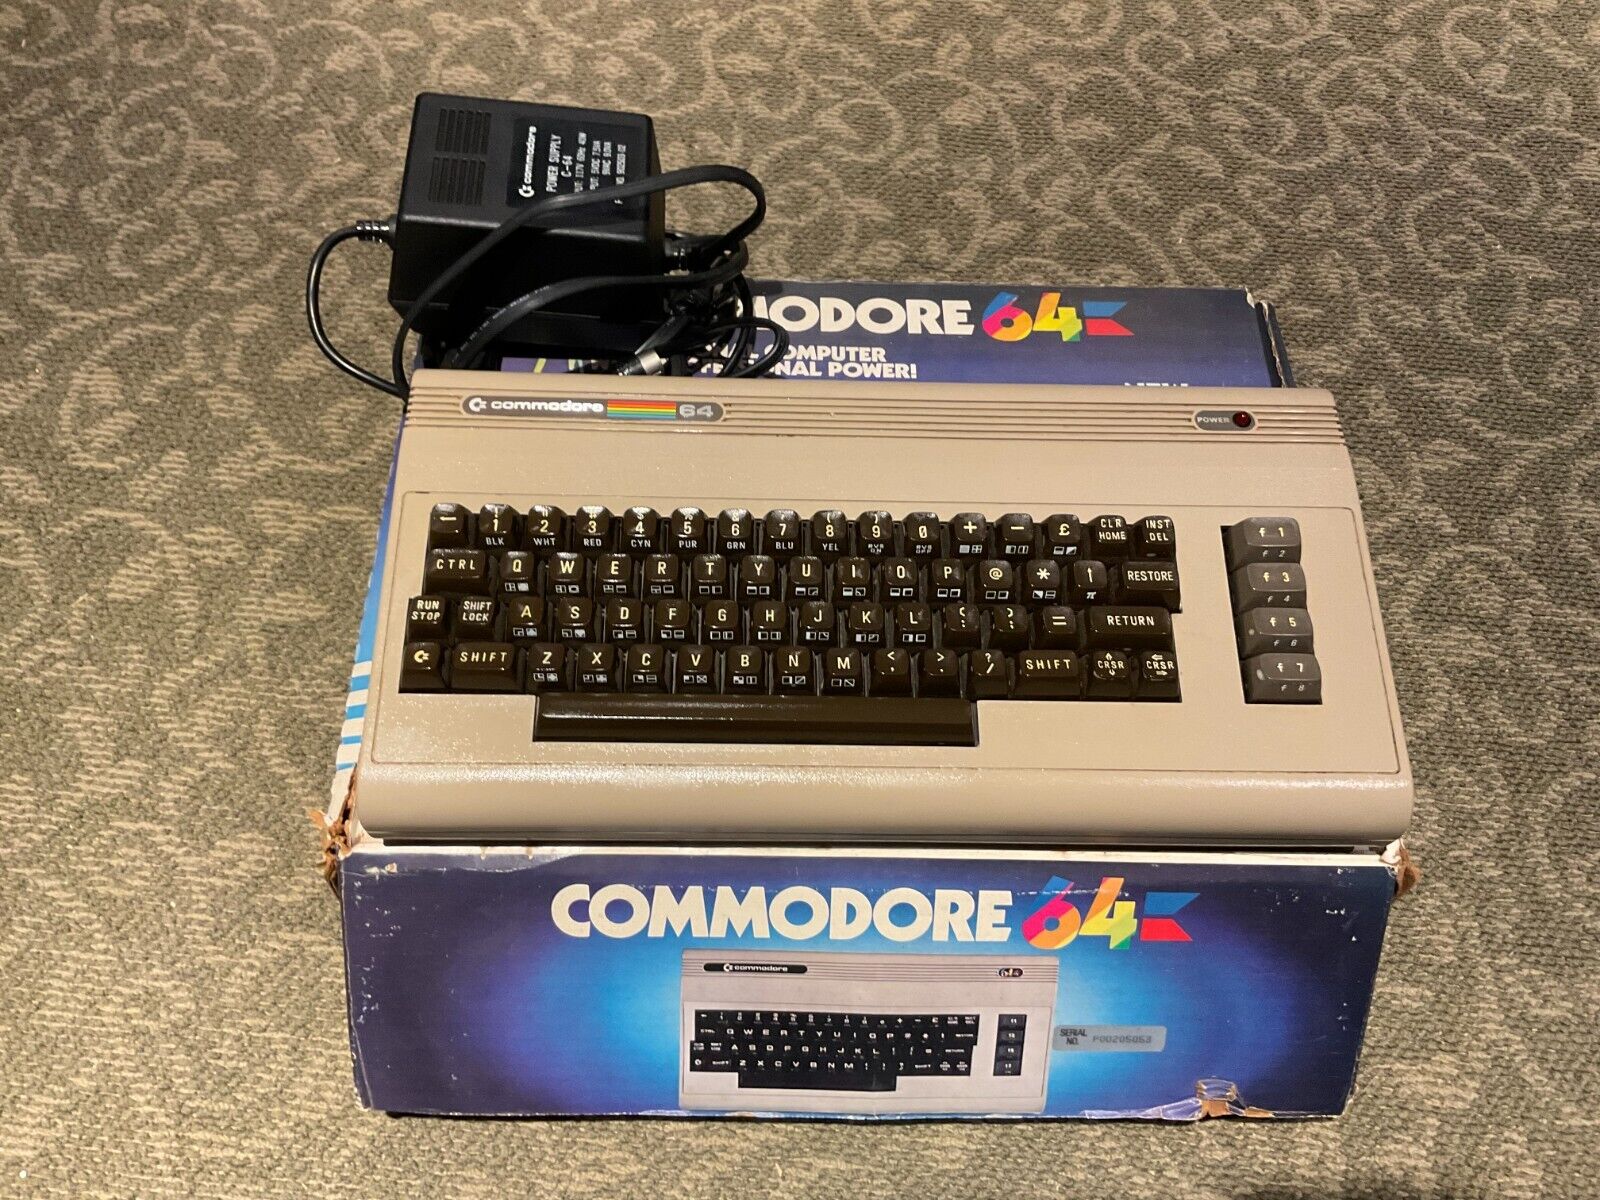 Commodore 64 in original box